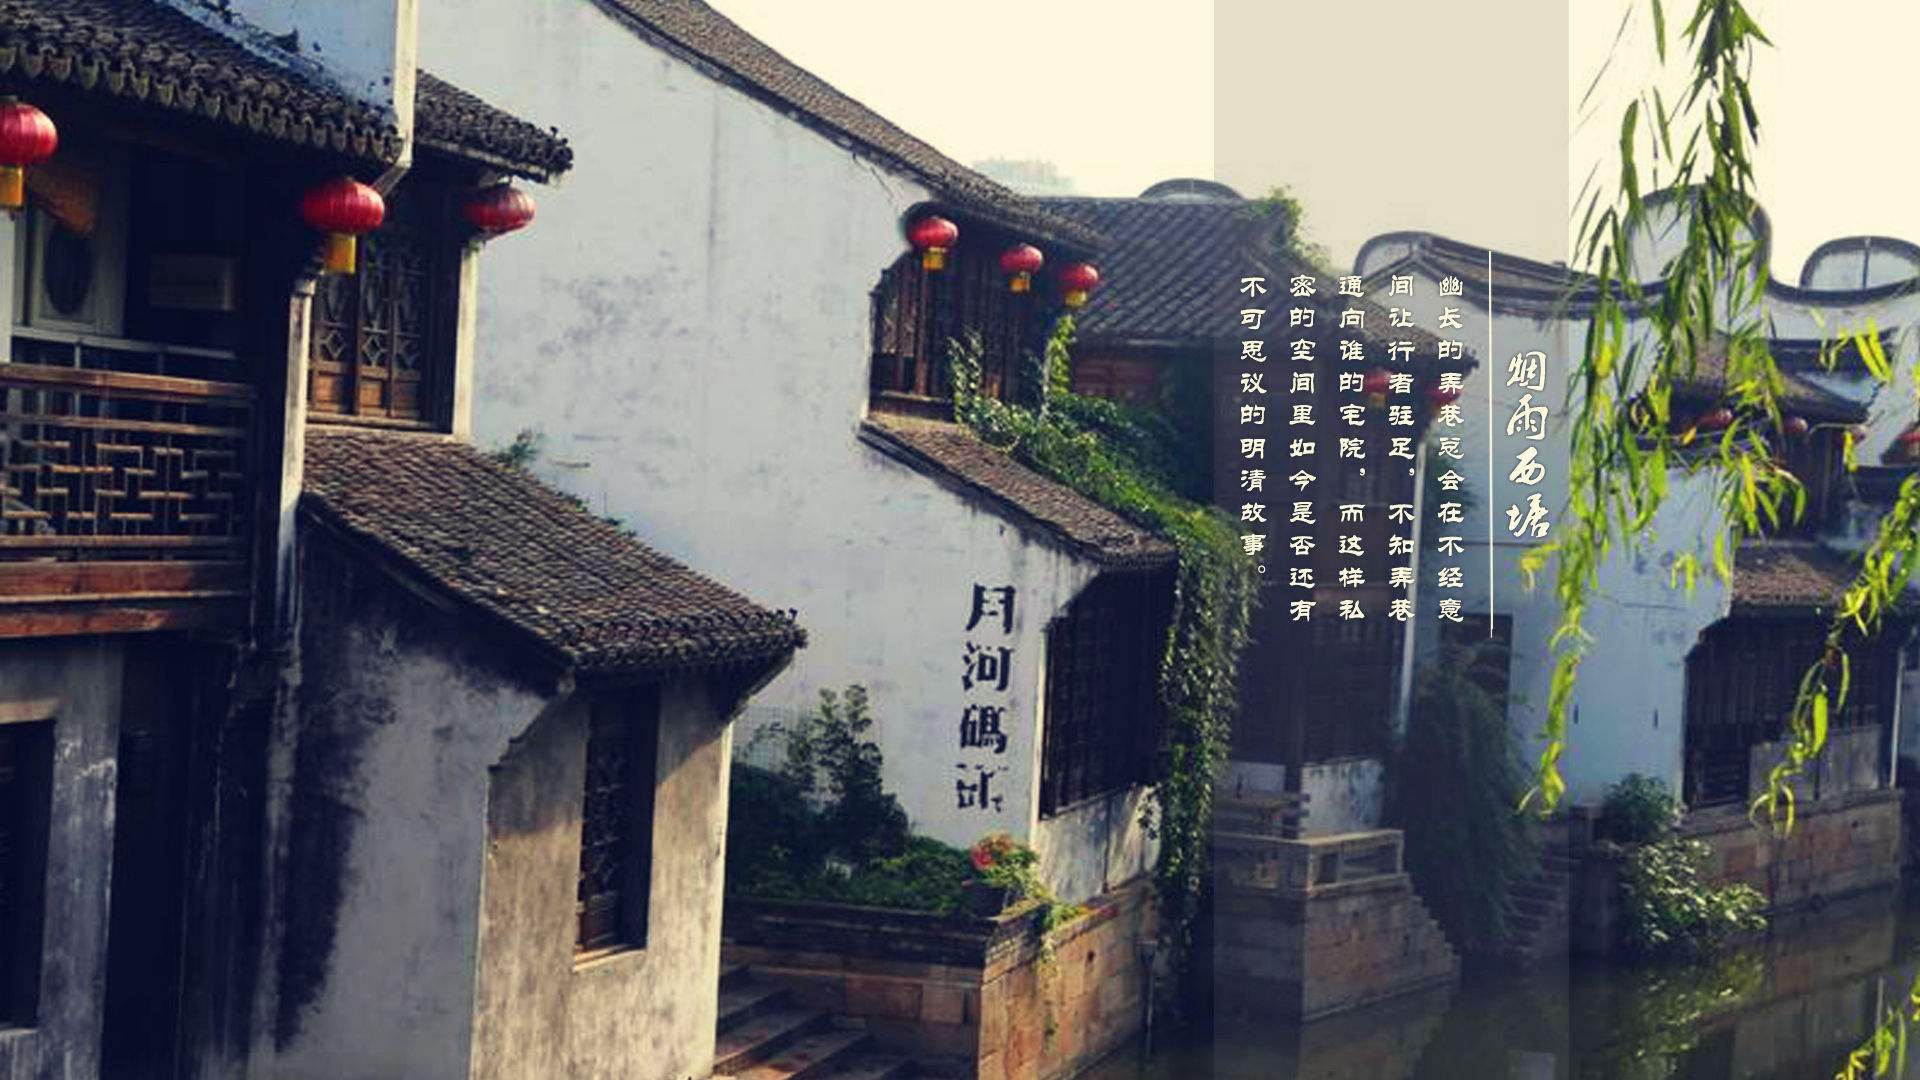 二都物語 西塘 浙江省嘉興市に位置する 千年の歴史もある 水郷 であり 江南で最も名高い古鎮の一つでもある 中国歴史的 文化的に有名な鎮と評価されている 中国観光 西塘 T Co Aox6zmzyls Twitter